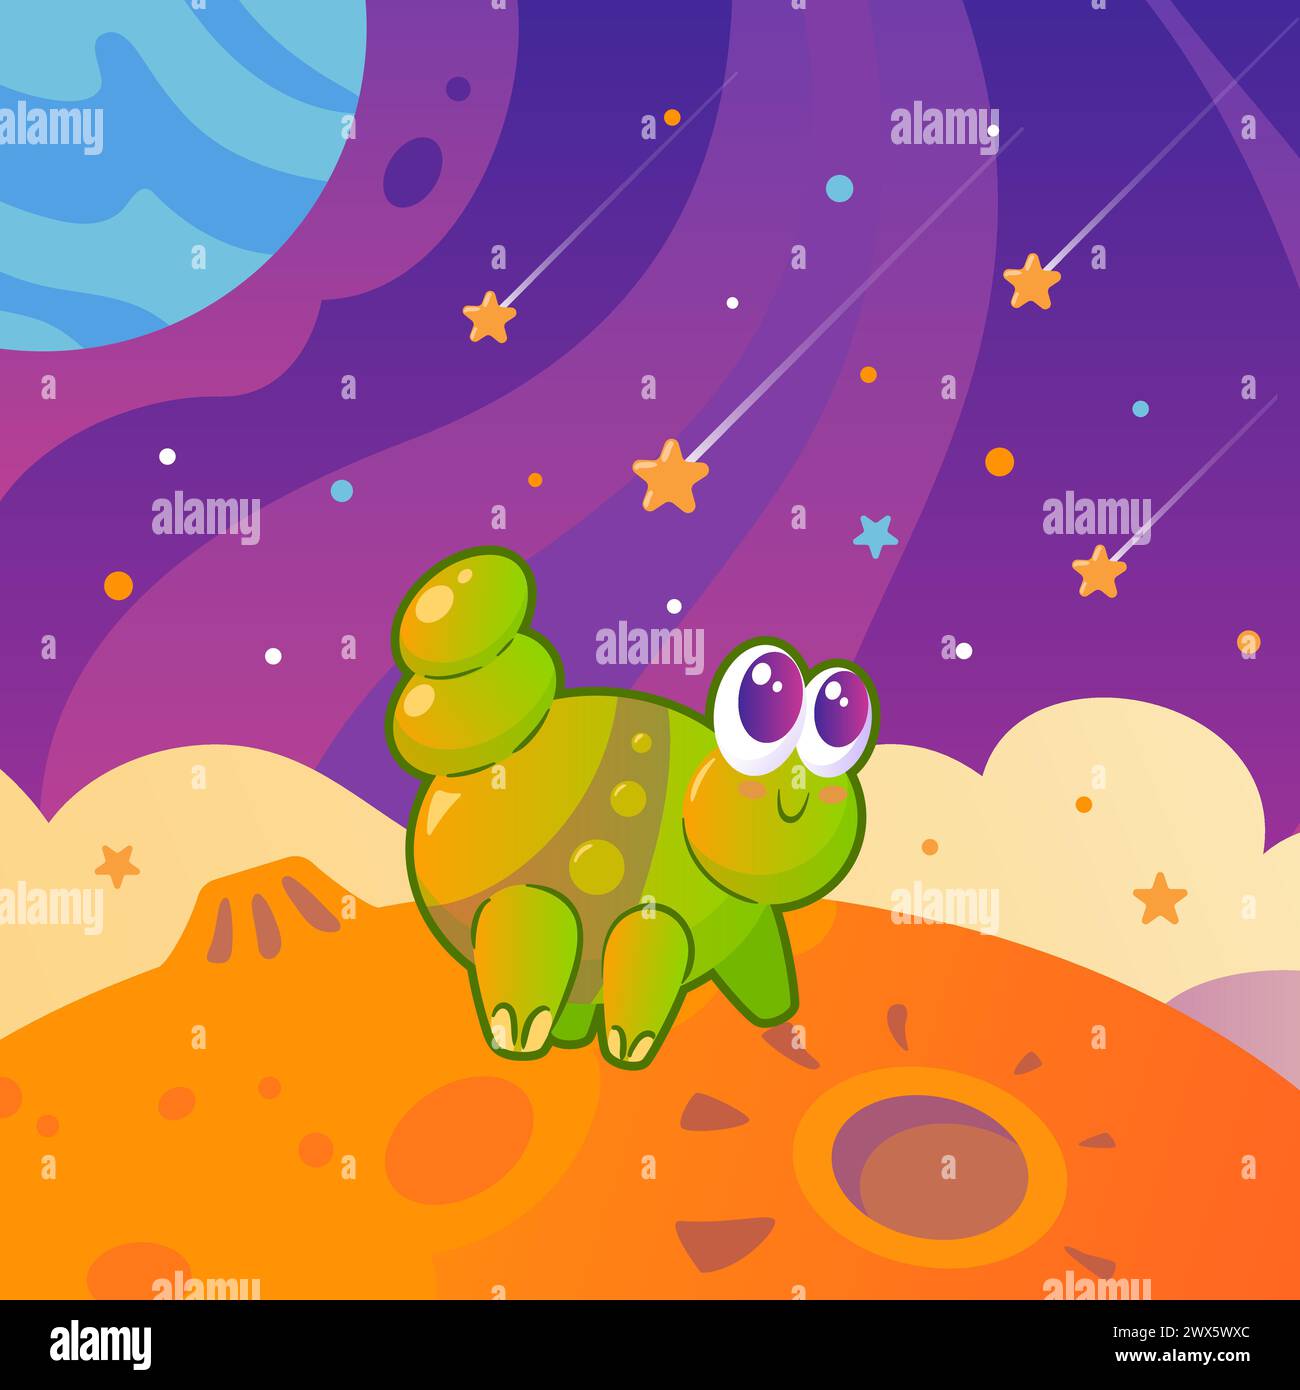 Niedliches grünes Alien, das wie eine raupe zwischen Planeten und Sternen aussieht. Weltraumlandschaft. Zeichentrickillustration für Kinder im Vintage-Stil. Raumflug Stock Vektor